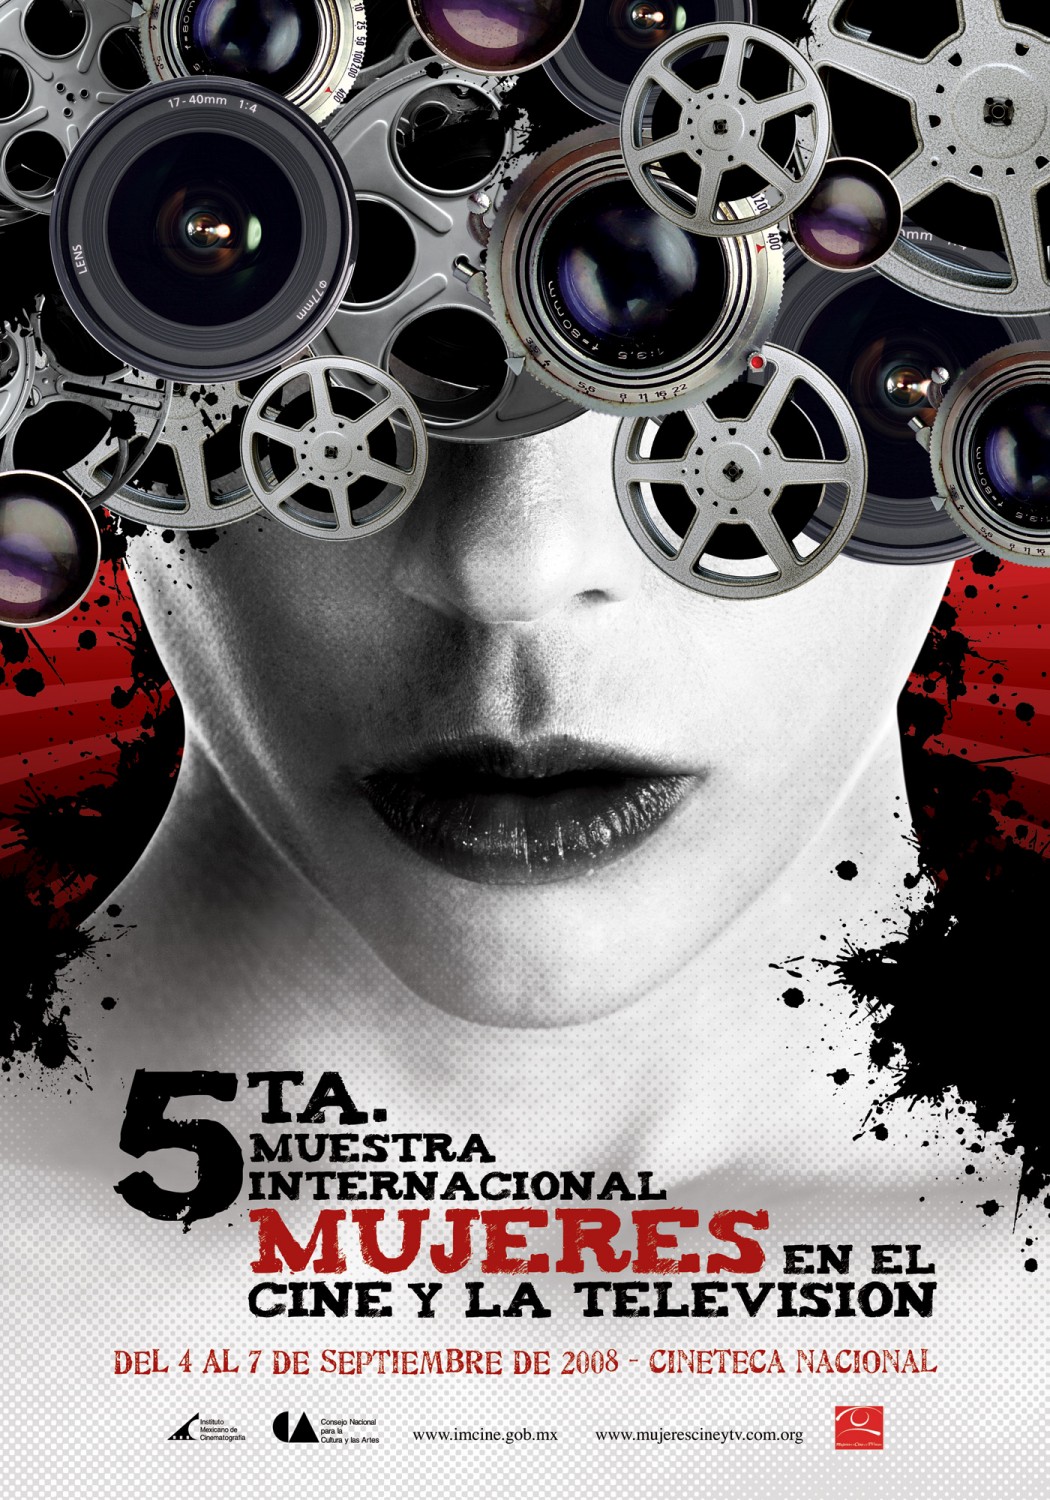 Extra Large TV Poster Image for Muestra Internacional de Mujeres en el Cine y la Televisión 